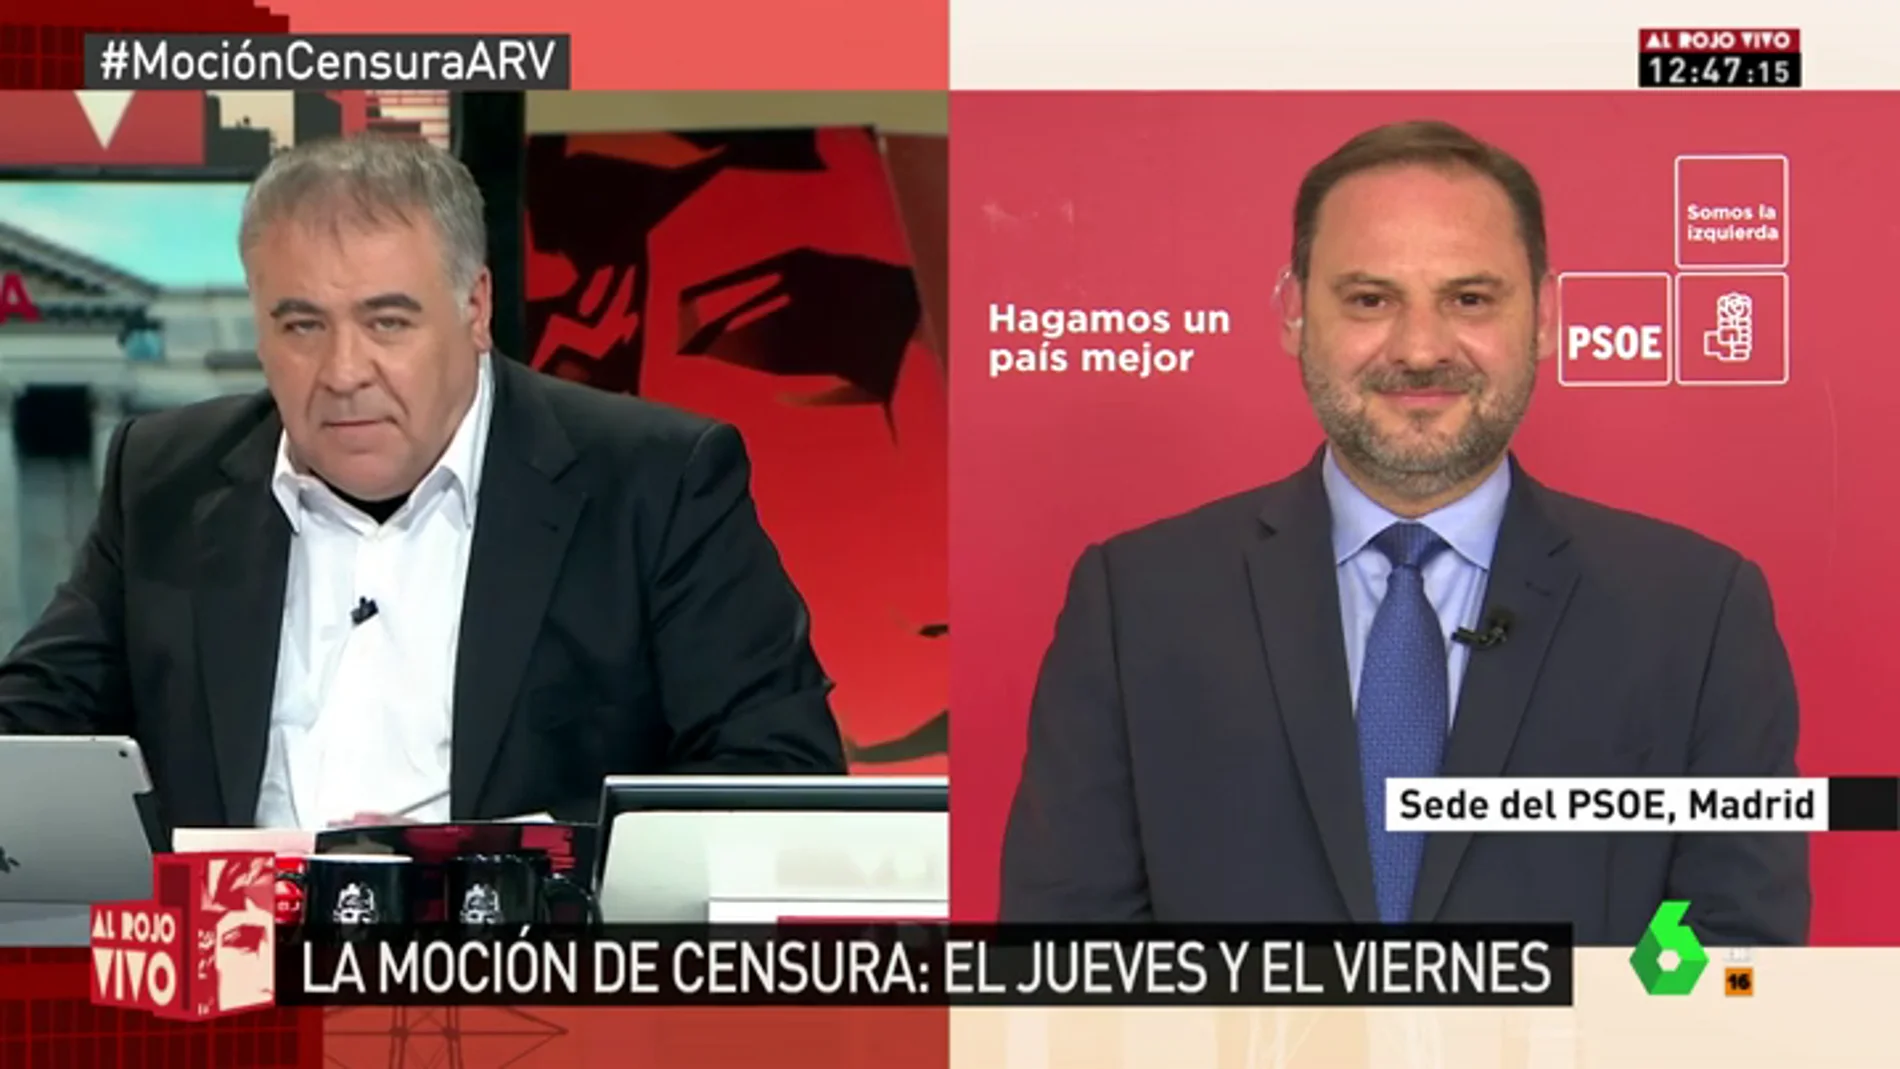 Ábalos avanza los pasos del PSOE si se aprueba la moción de censura a Rajoy: "Tenemos el compromiso de convocar elecciones"